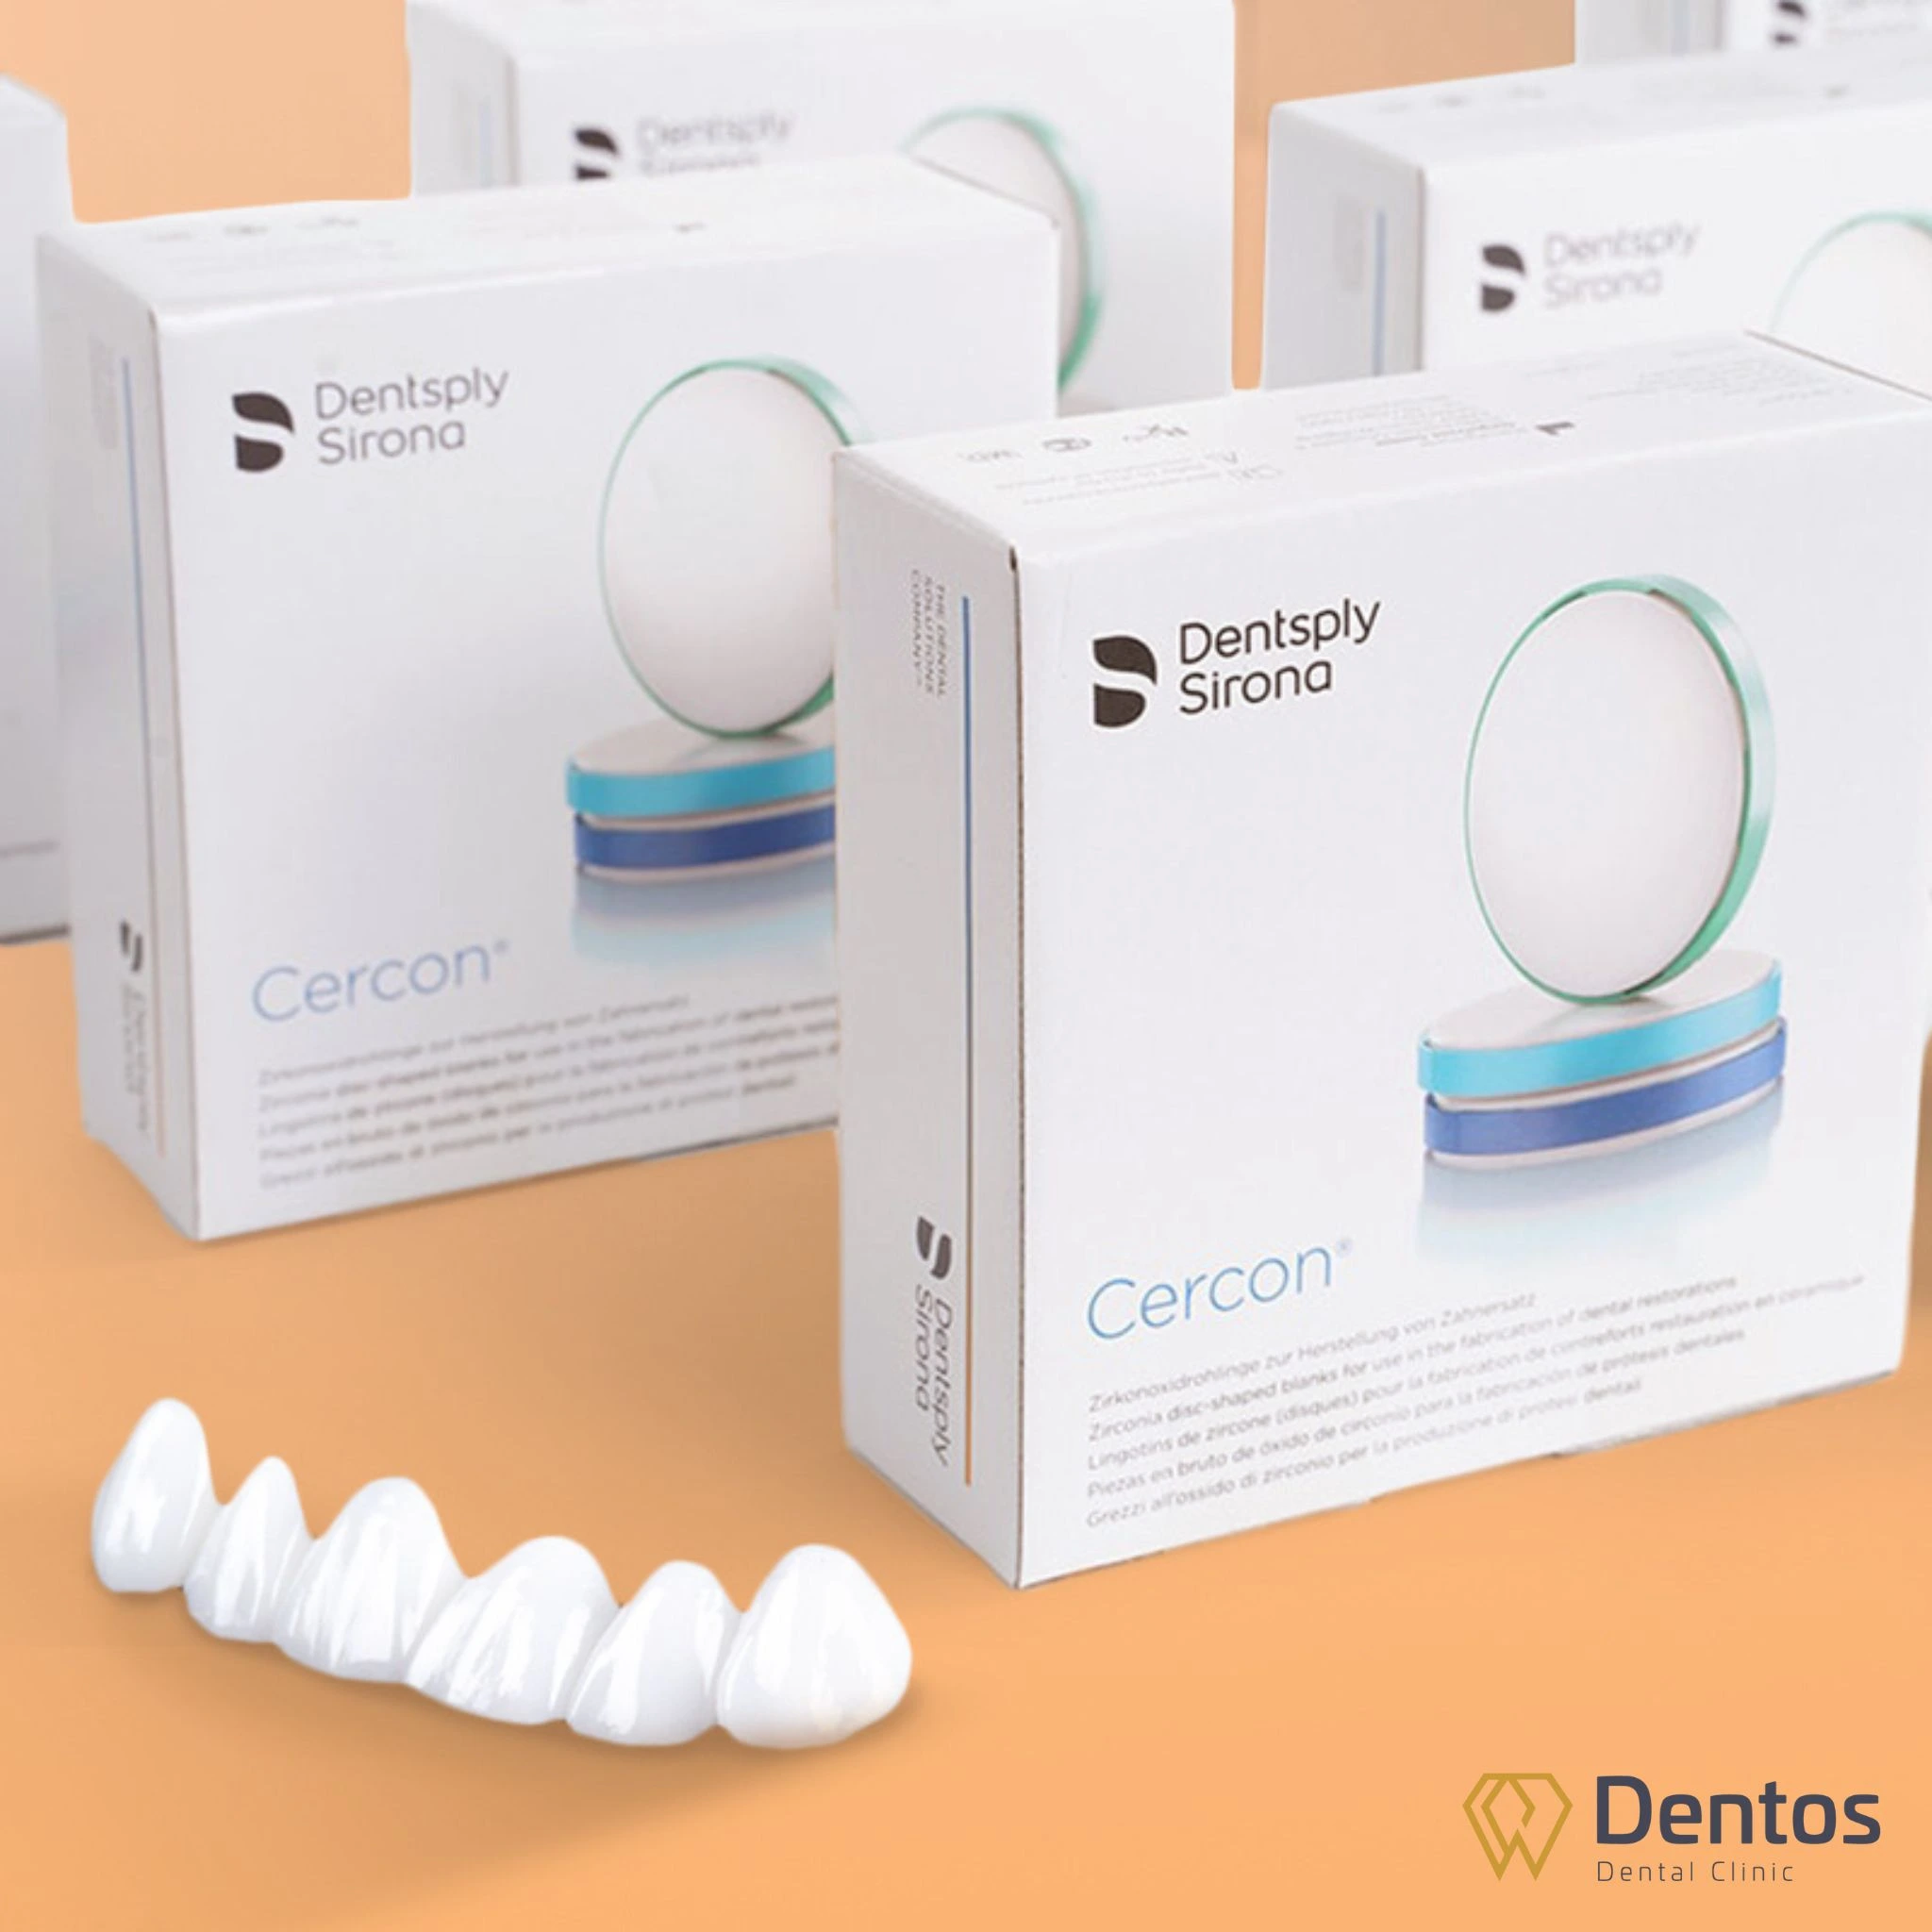 Răng sứ Cercon ht có nguồn gốc từ Đức, được phân phối bởi Tập đoàn Dentsply Sirona